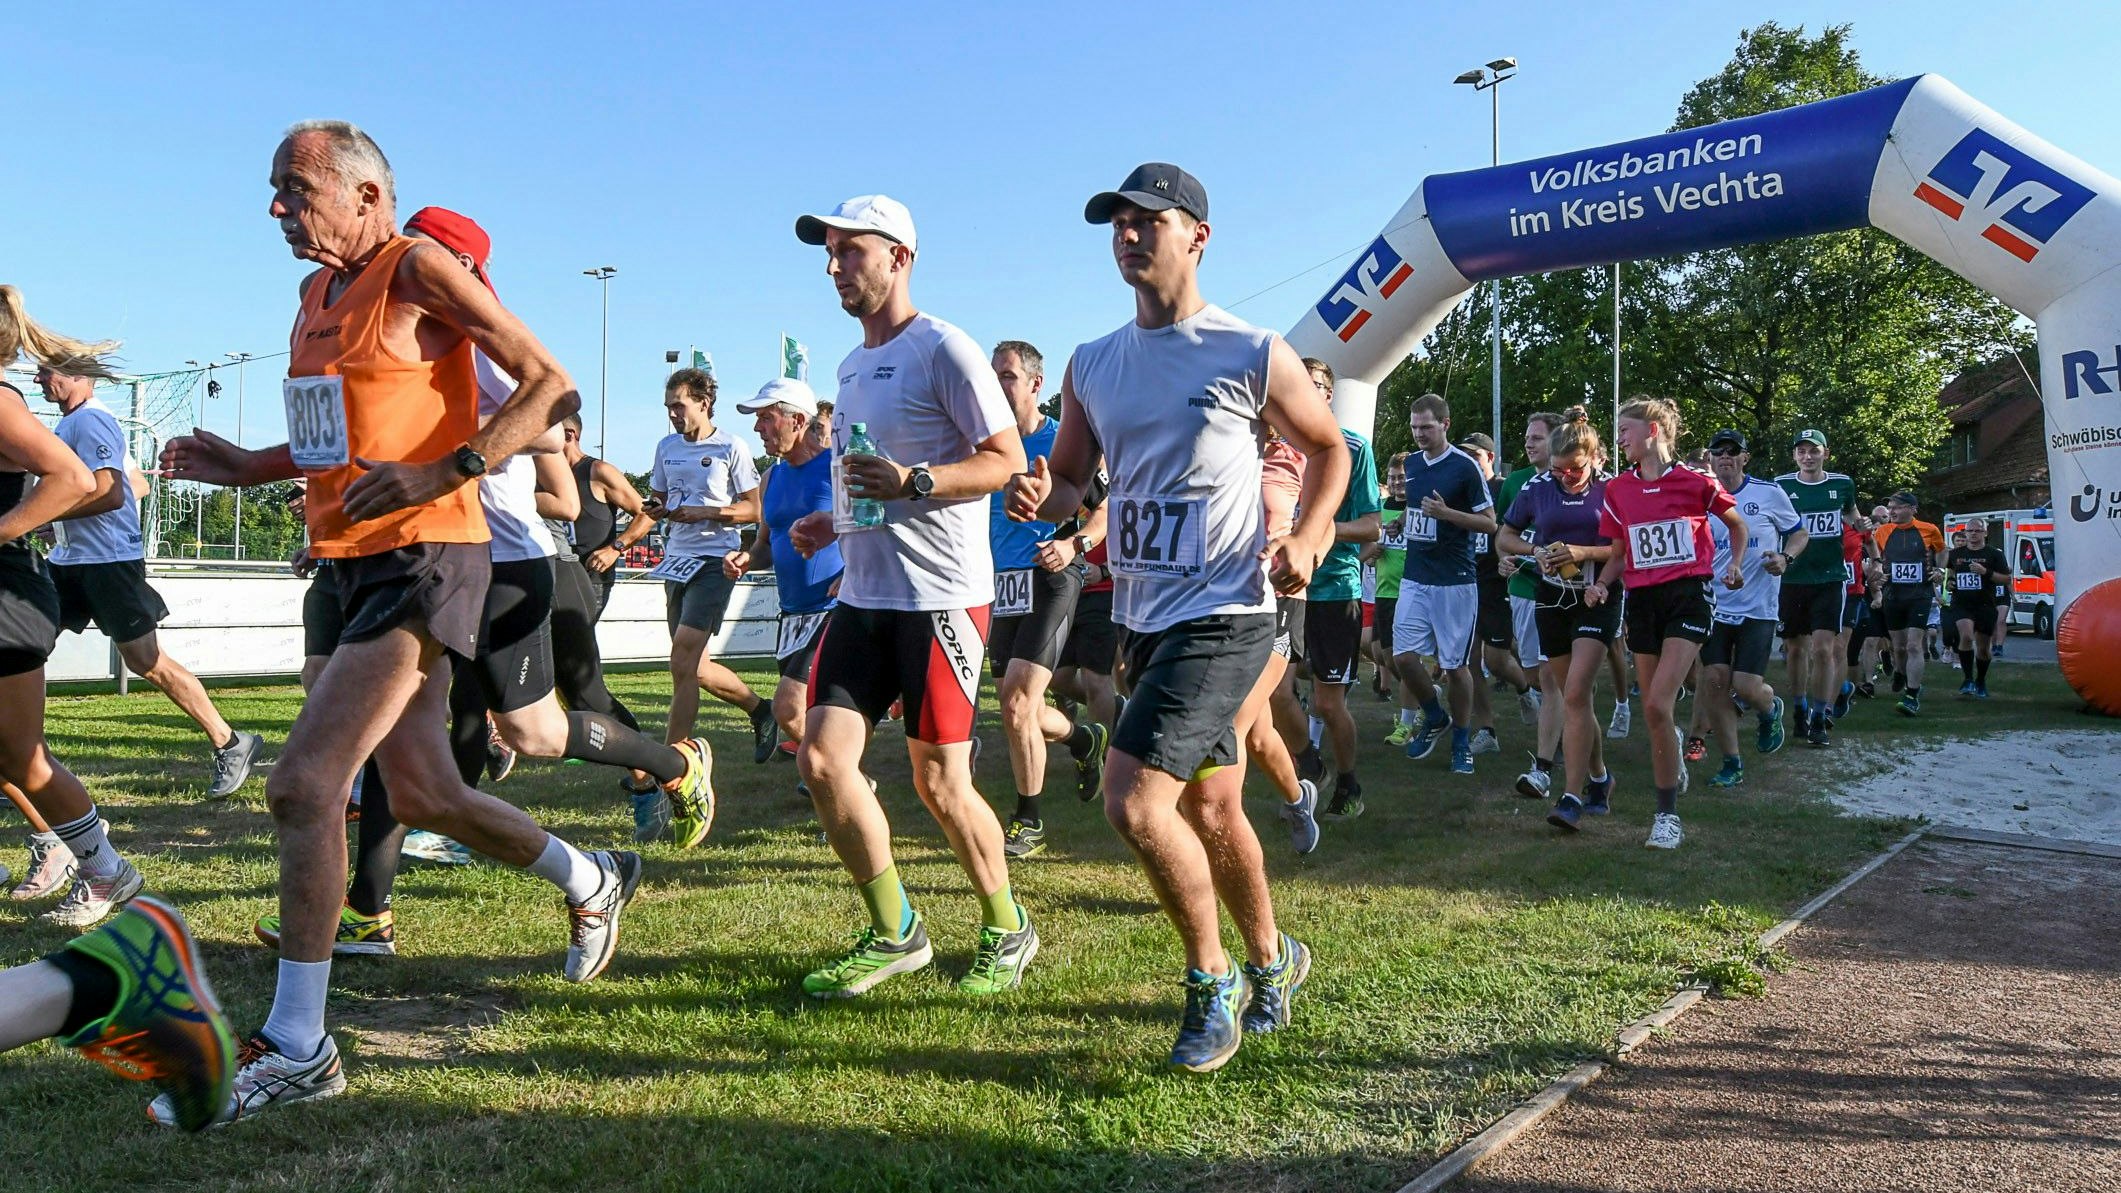 Startszene im Jahr 2019: Damals waren 193 Läufer am Start. Das Brockdorfer Orga-Team hofft auf eine ähnliche Zahl am Freitag. Foto: Wenzel